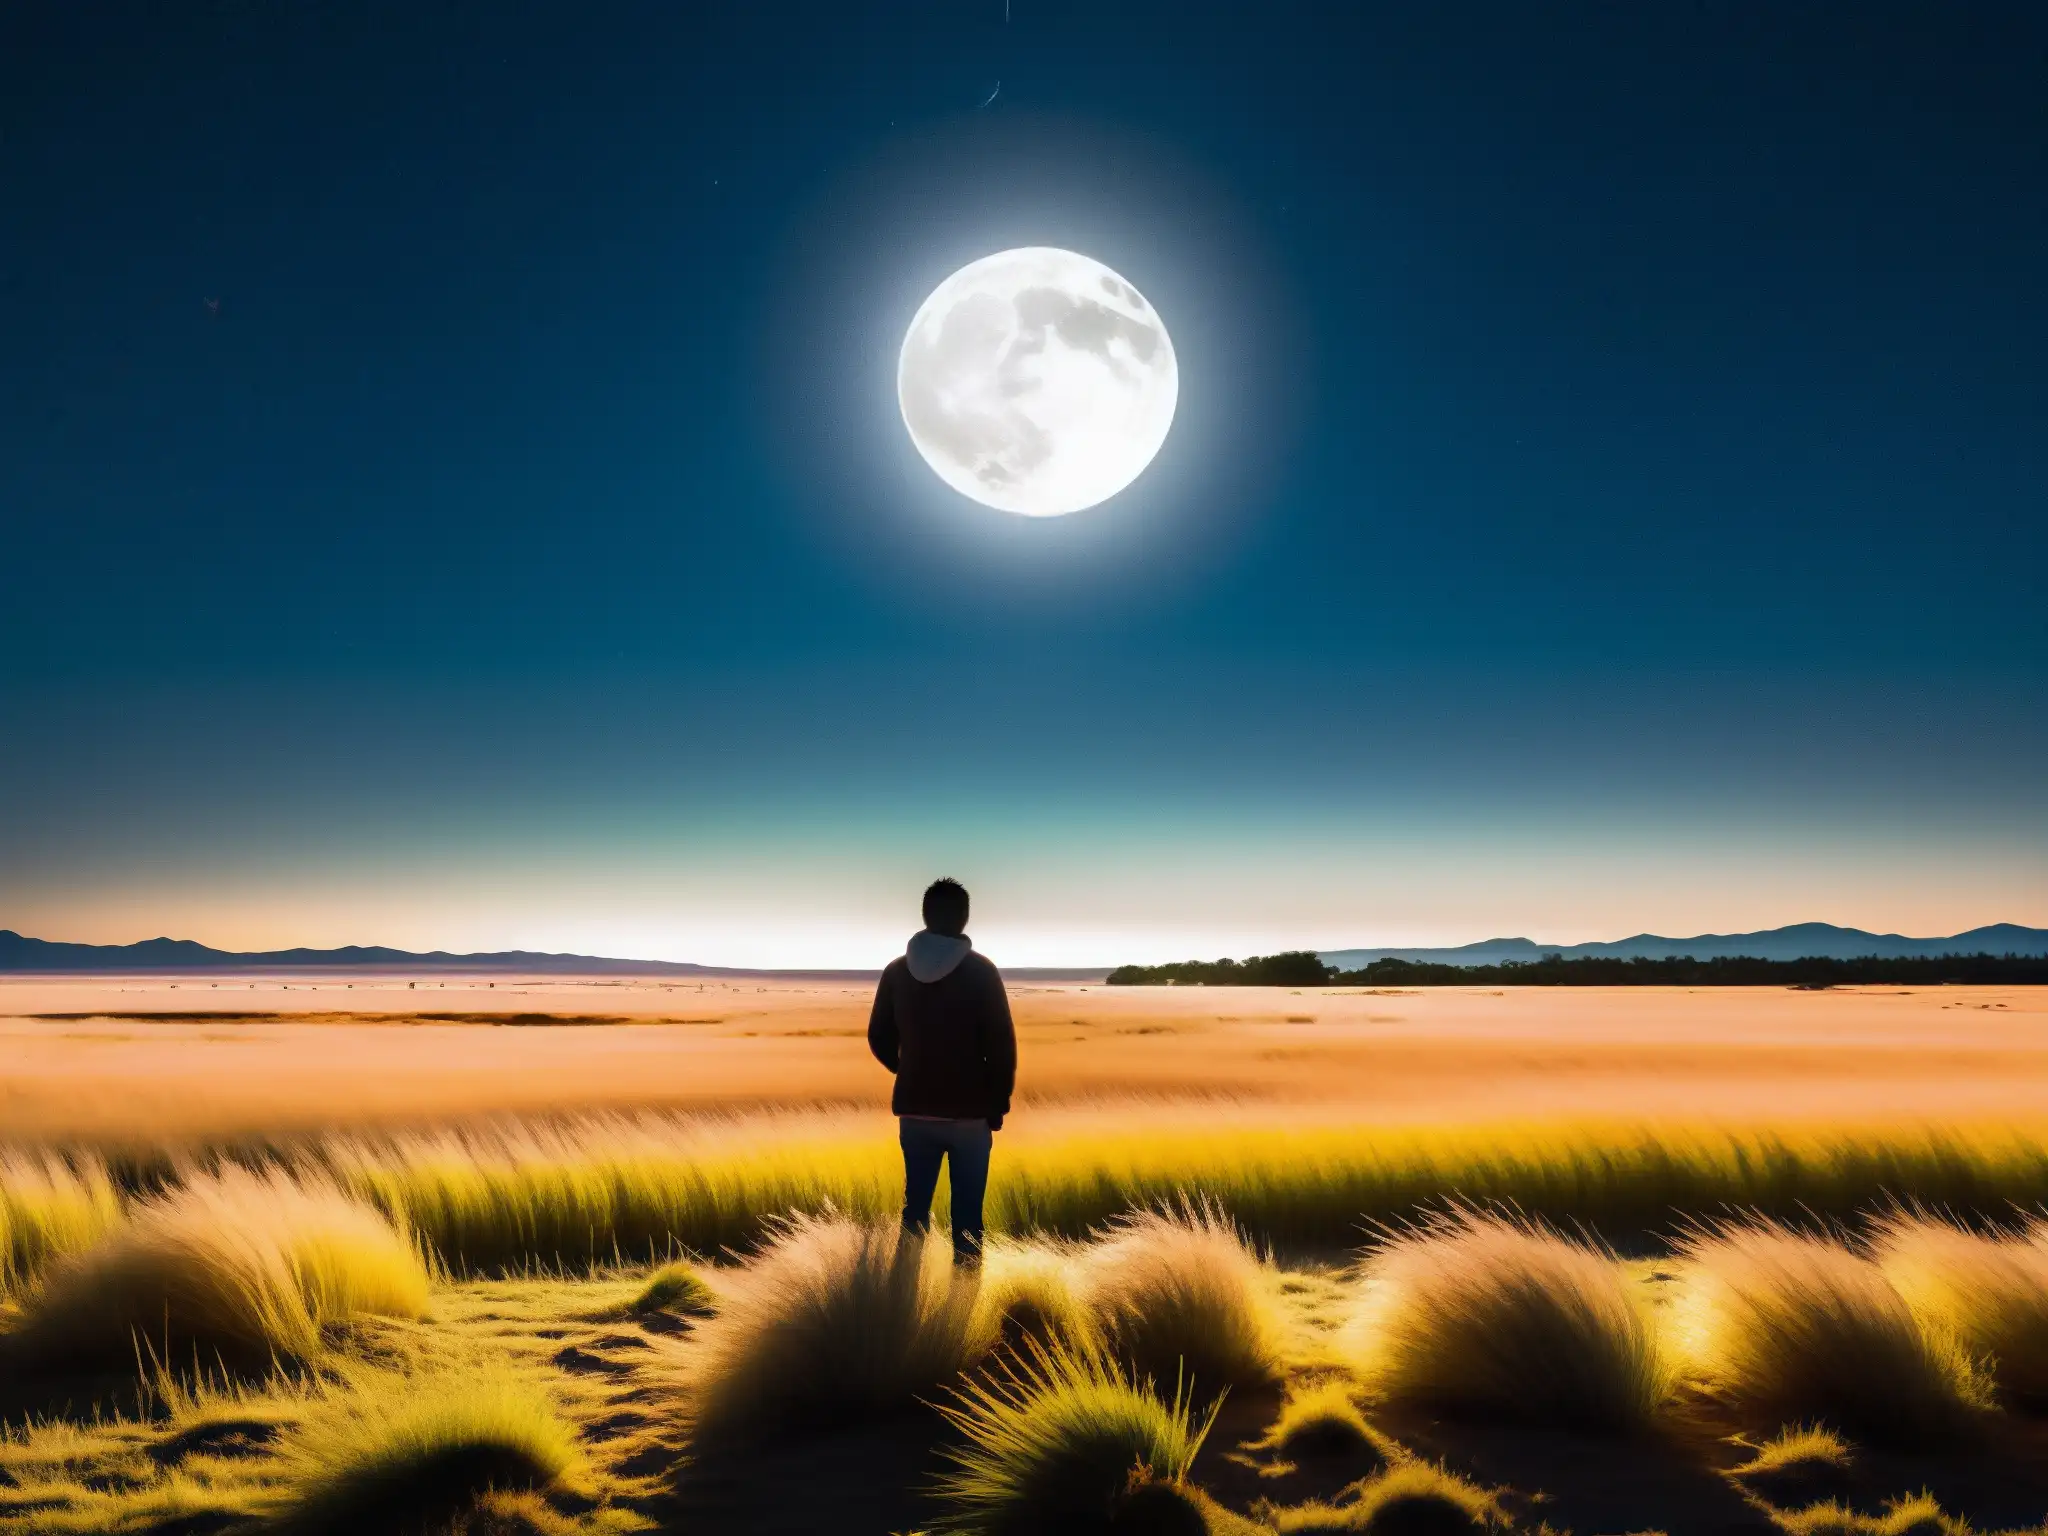 Un paisaje lunar en las vastas pampas argentinas con la transformación misteriosa del Lobizón bajo la luz de la luna llena